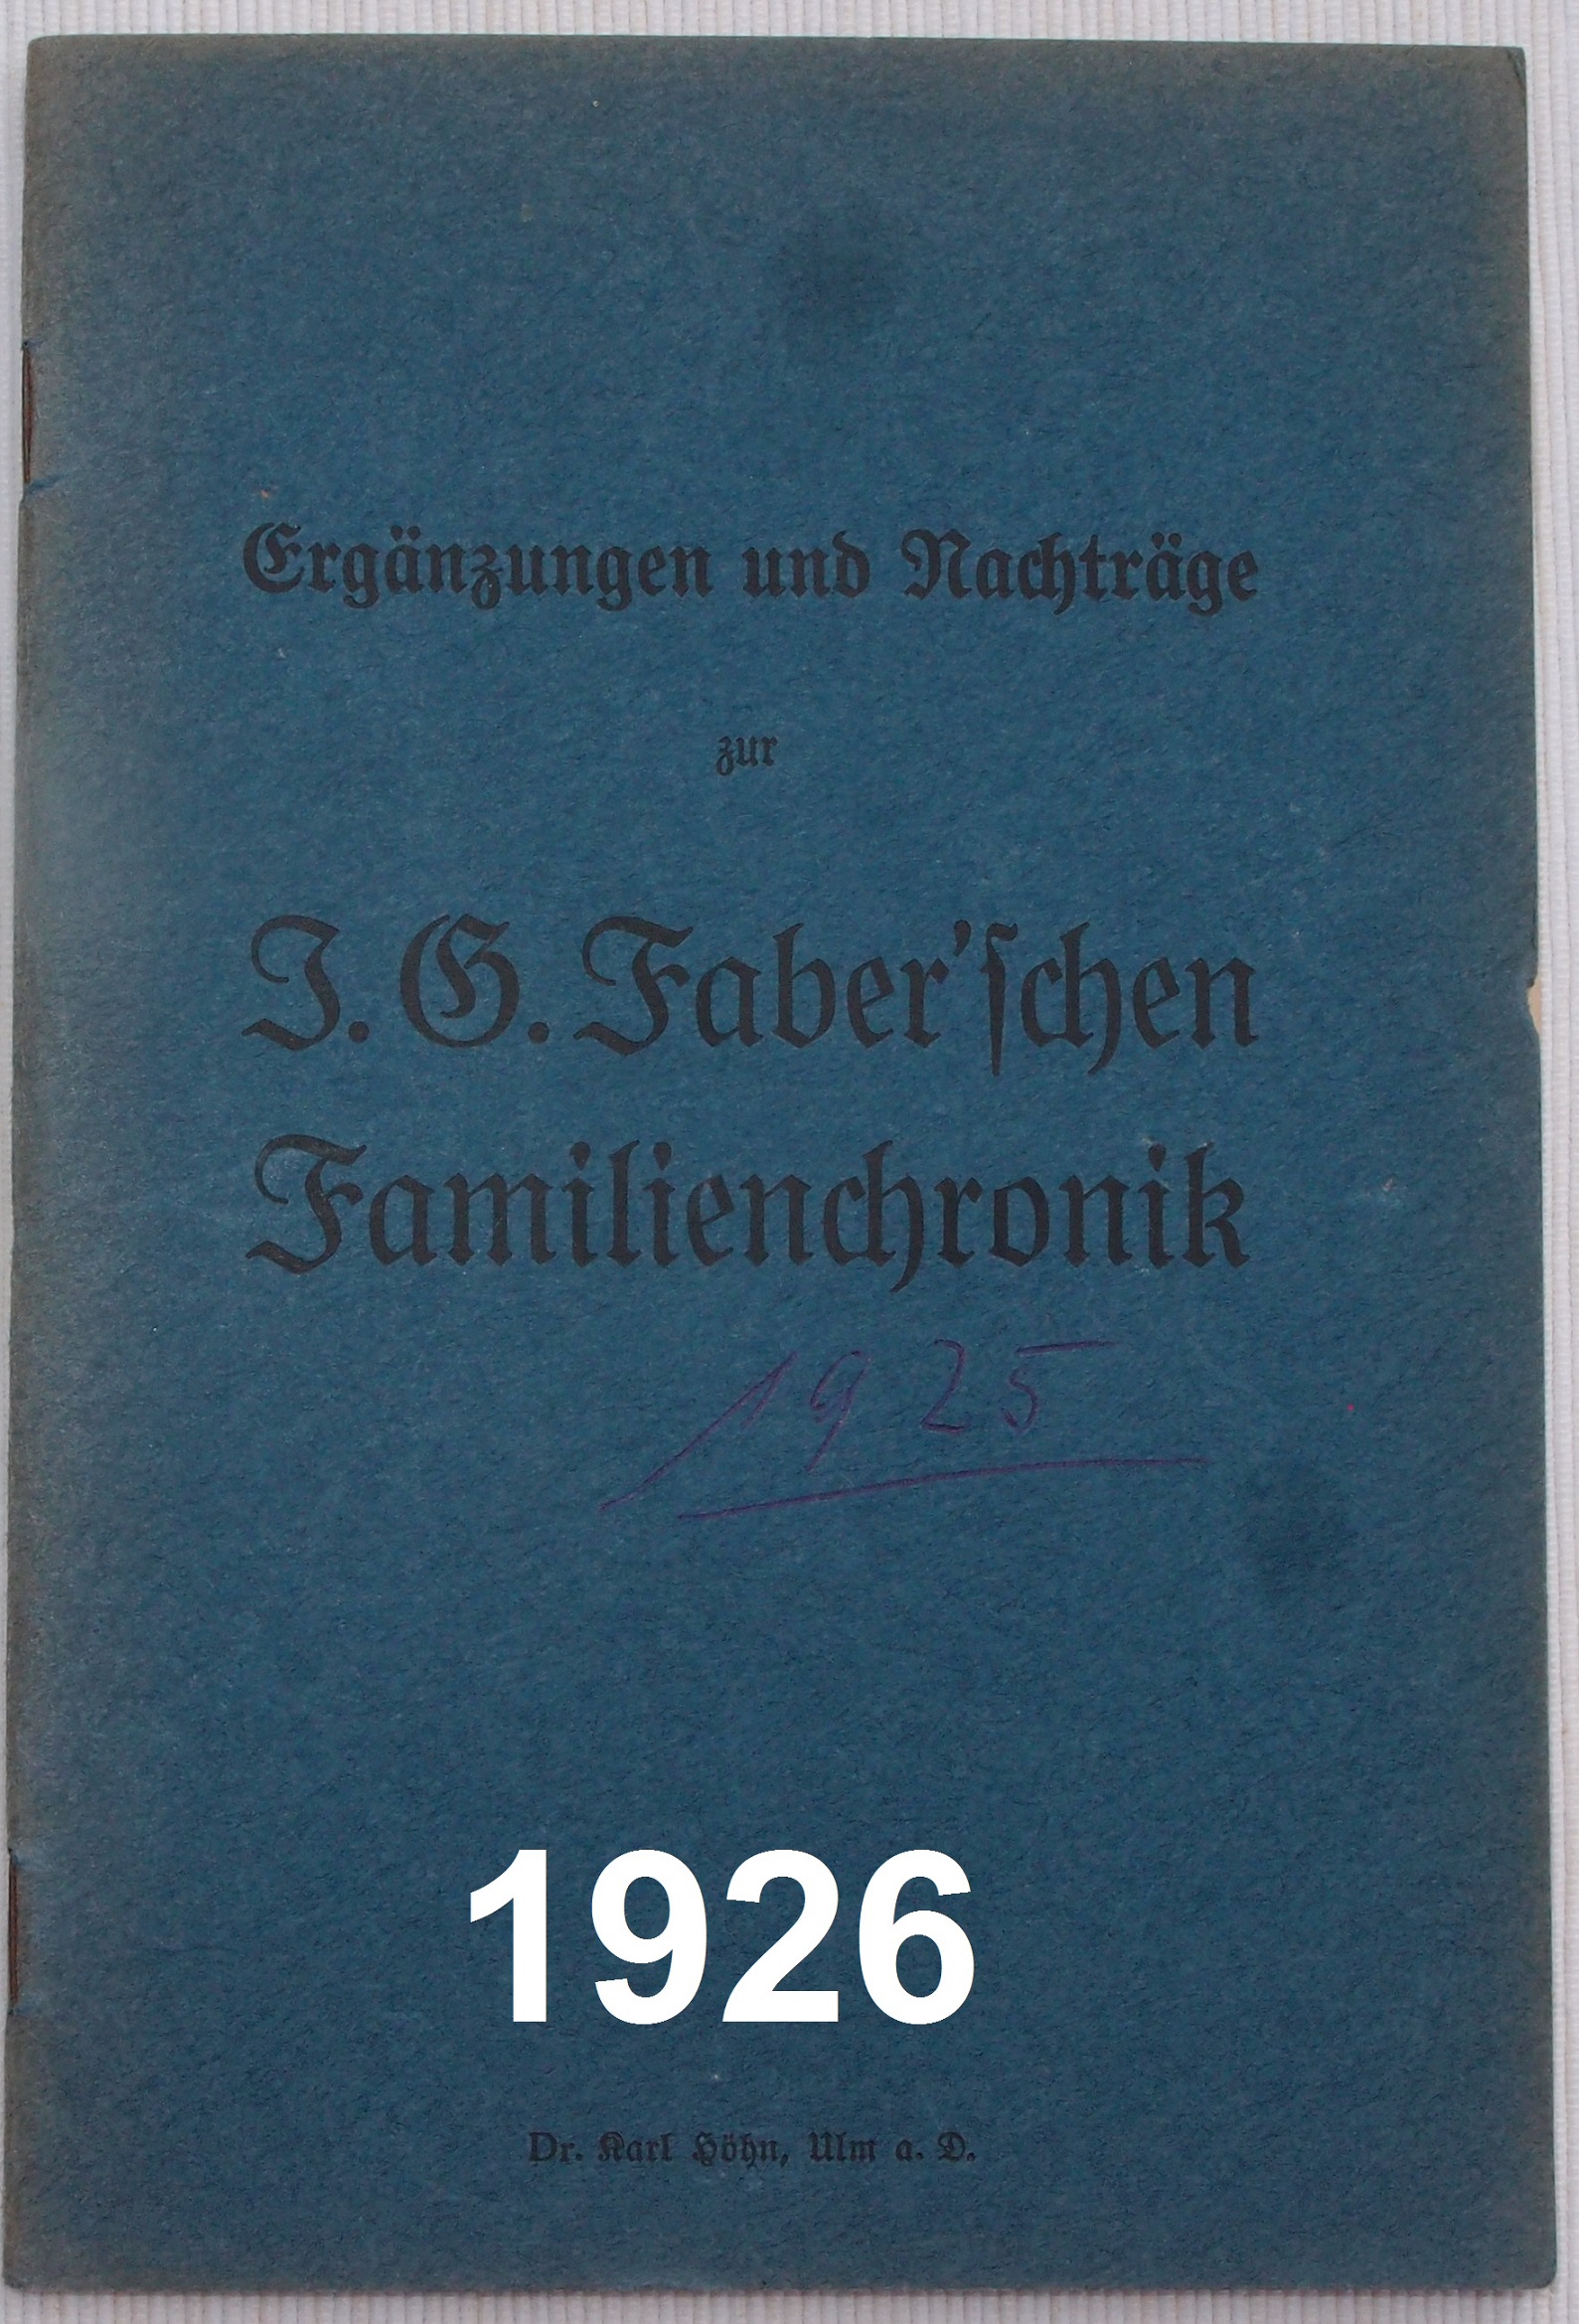 2018 08 10 Faberbuch 1926 B1